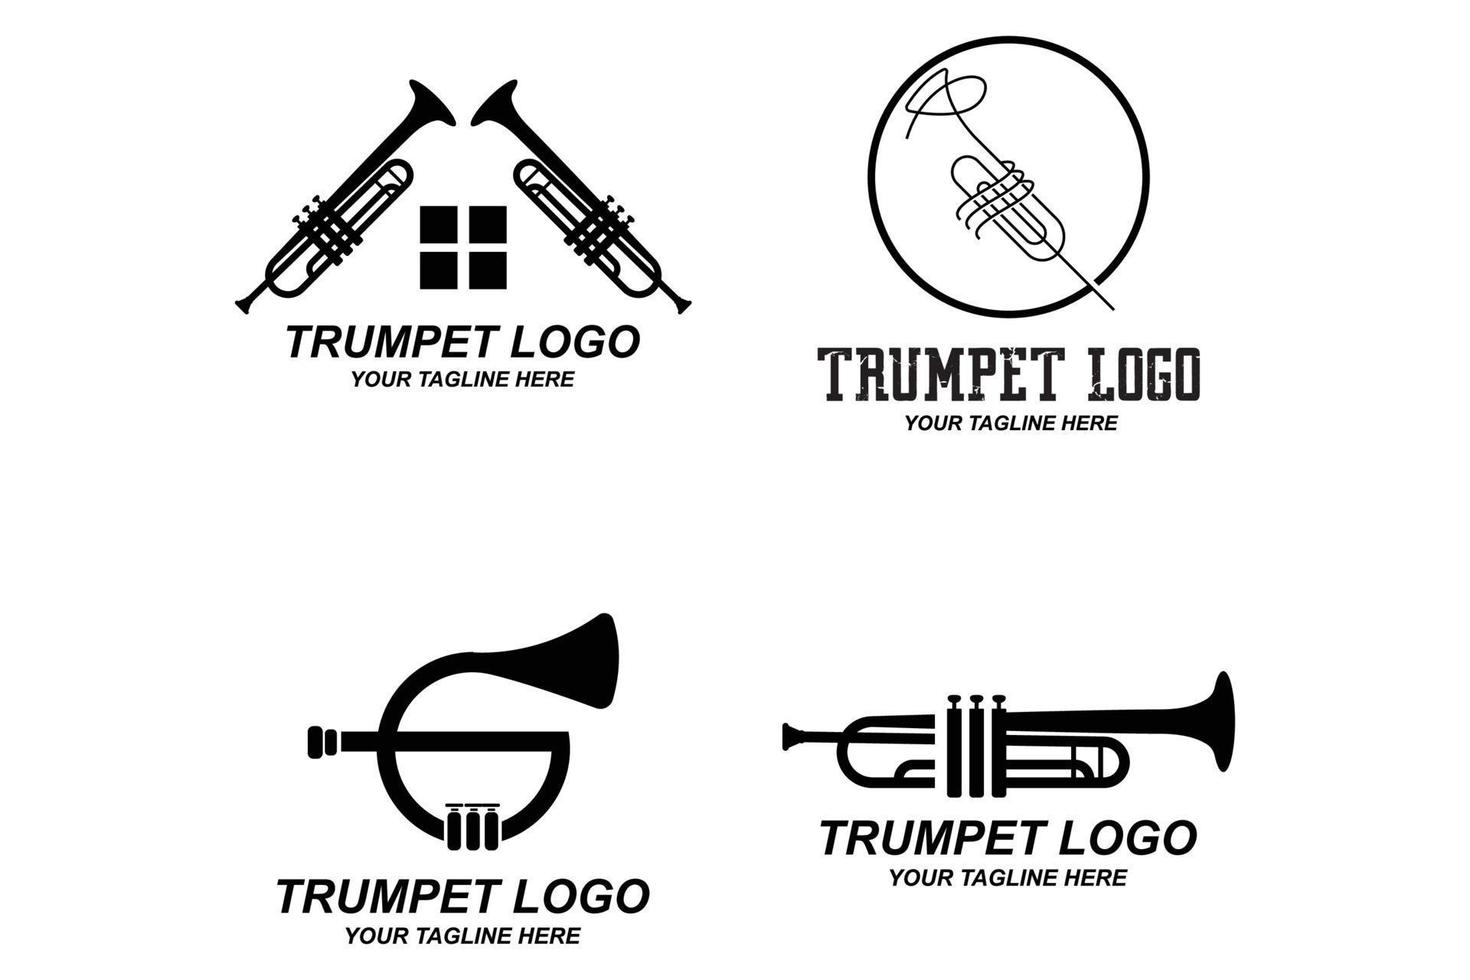 Trompetenlogodesign, erzeugen Melodie, Musikinstrumentvektorskizzenillustration vektor